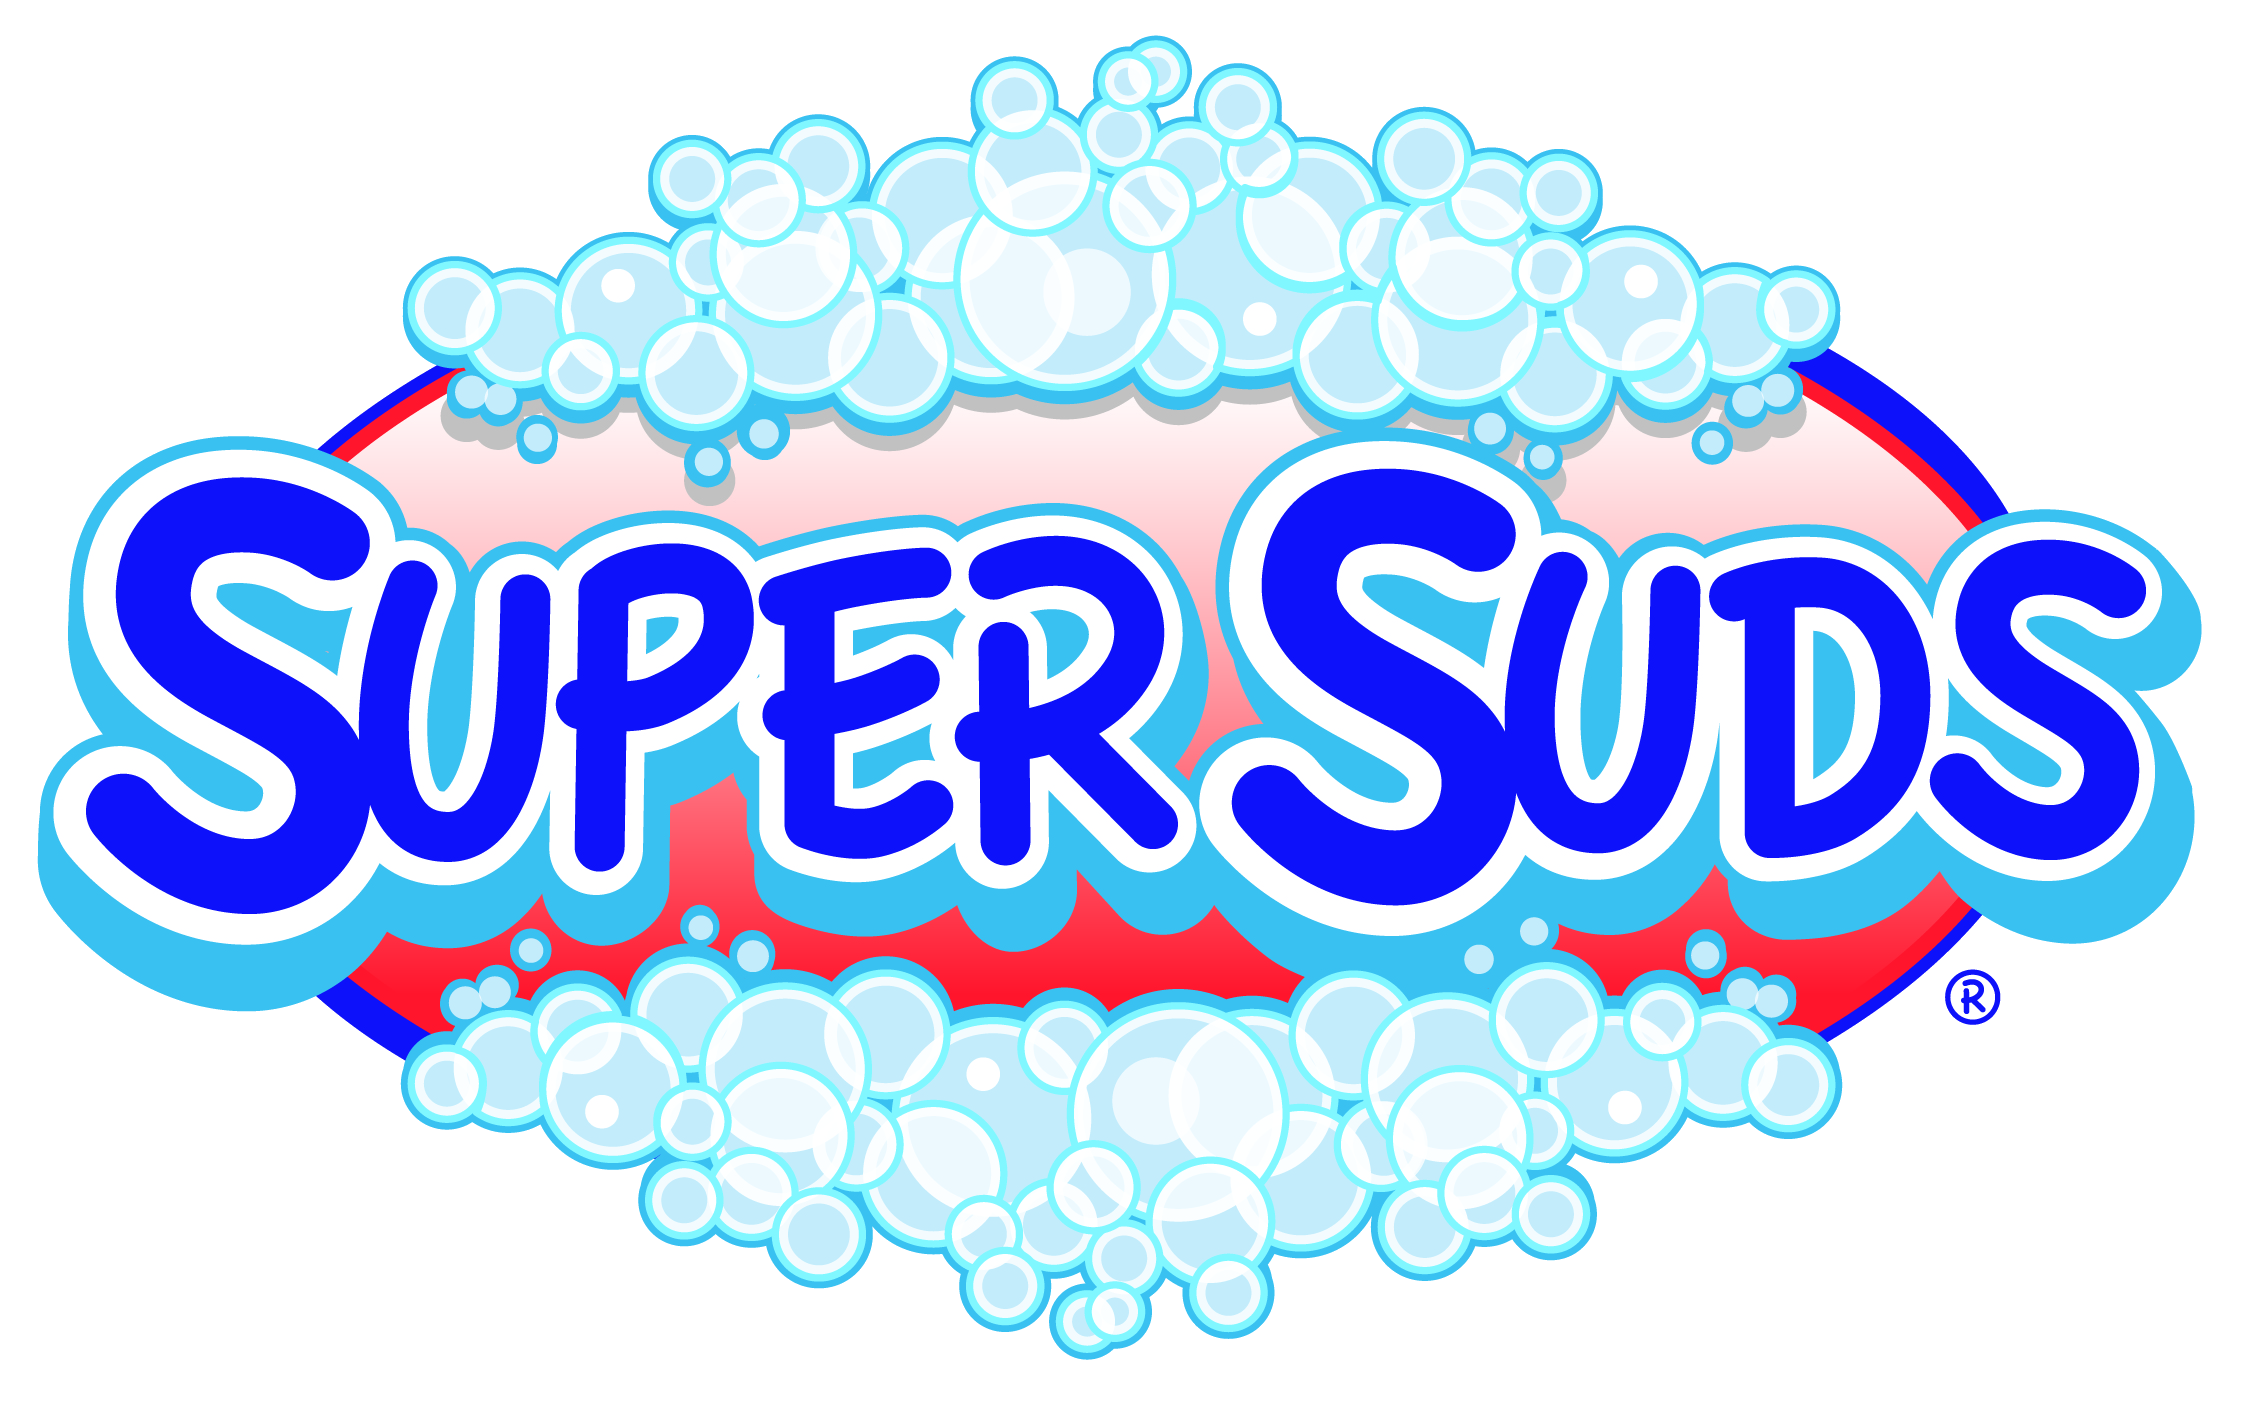 SuperSuds Logo